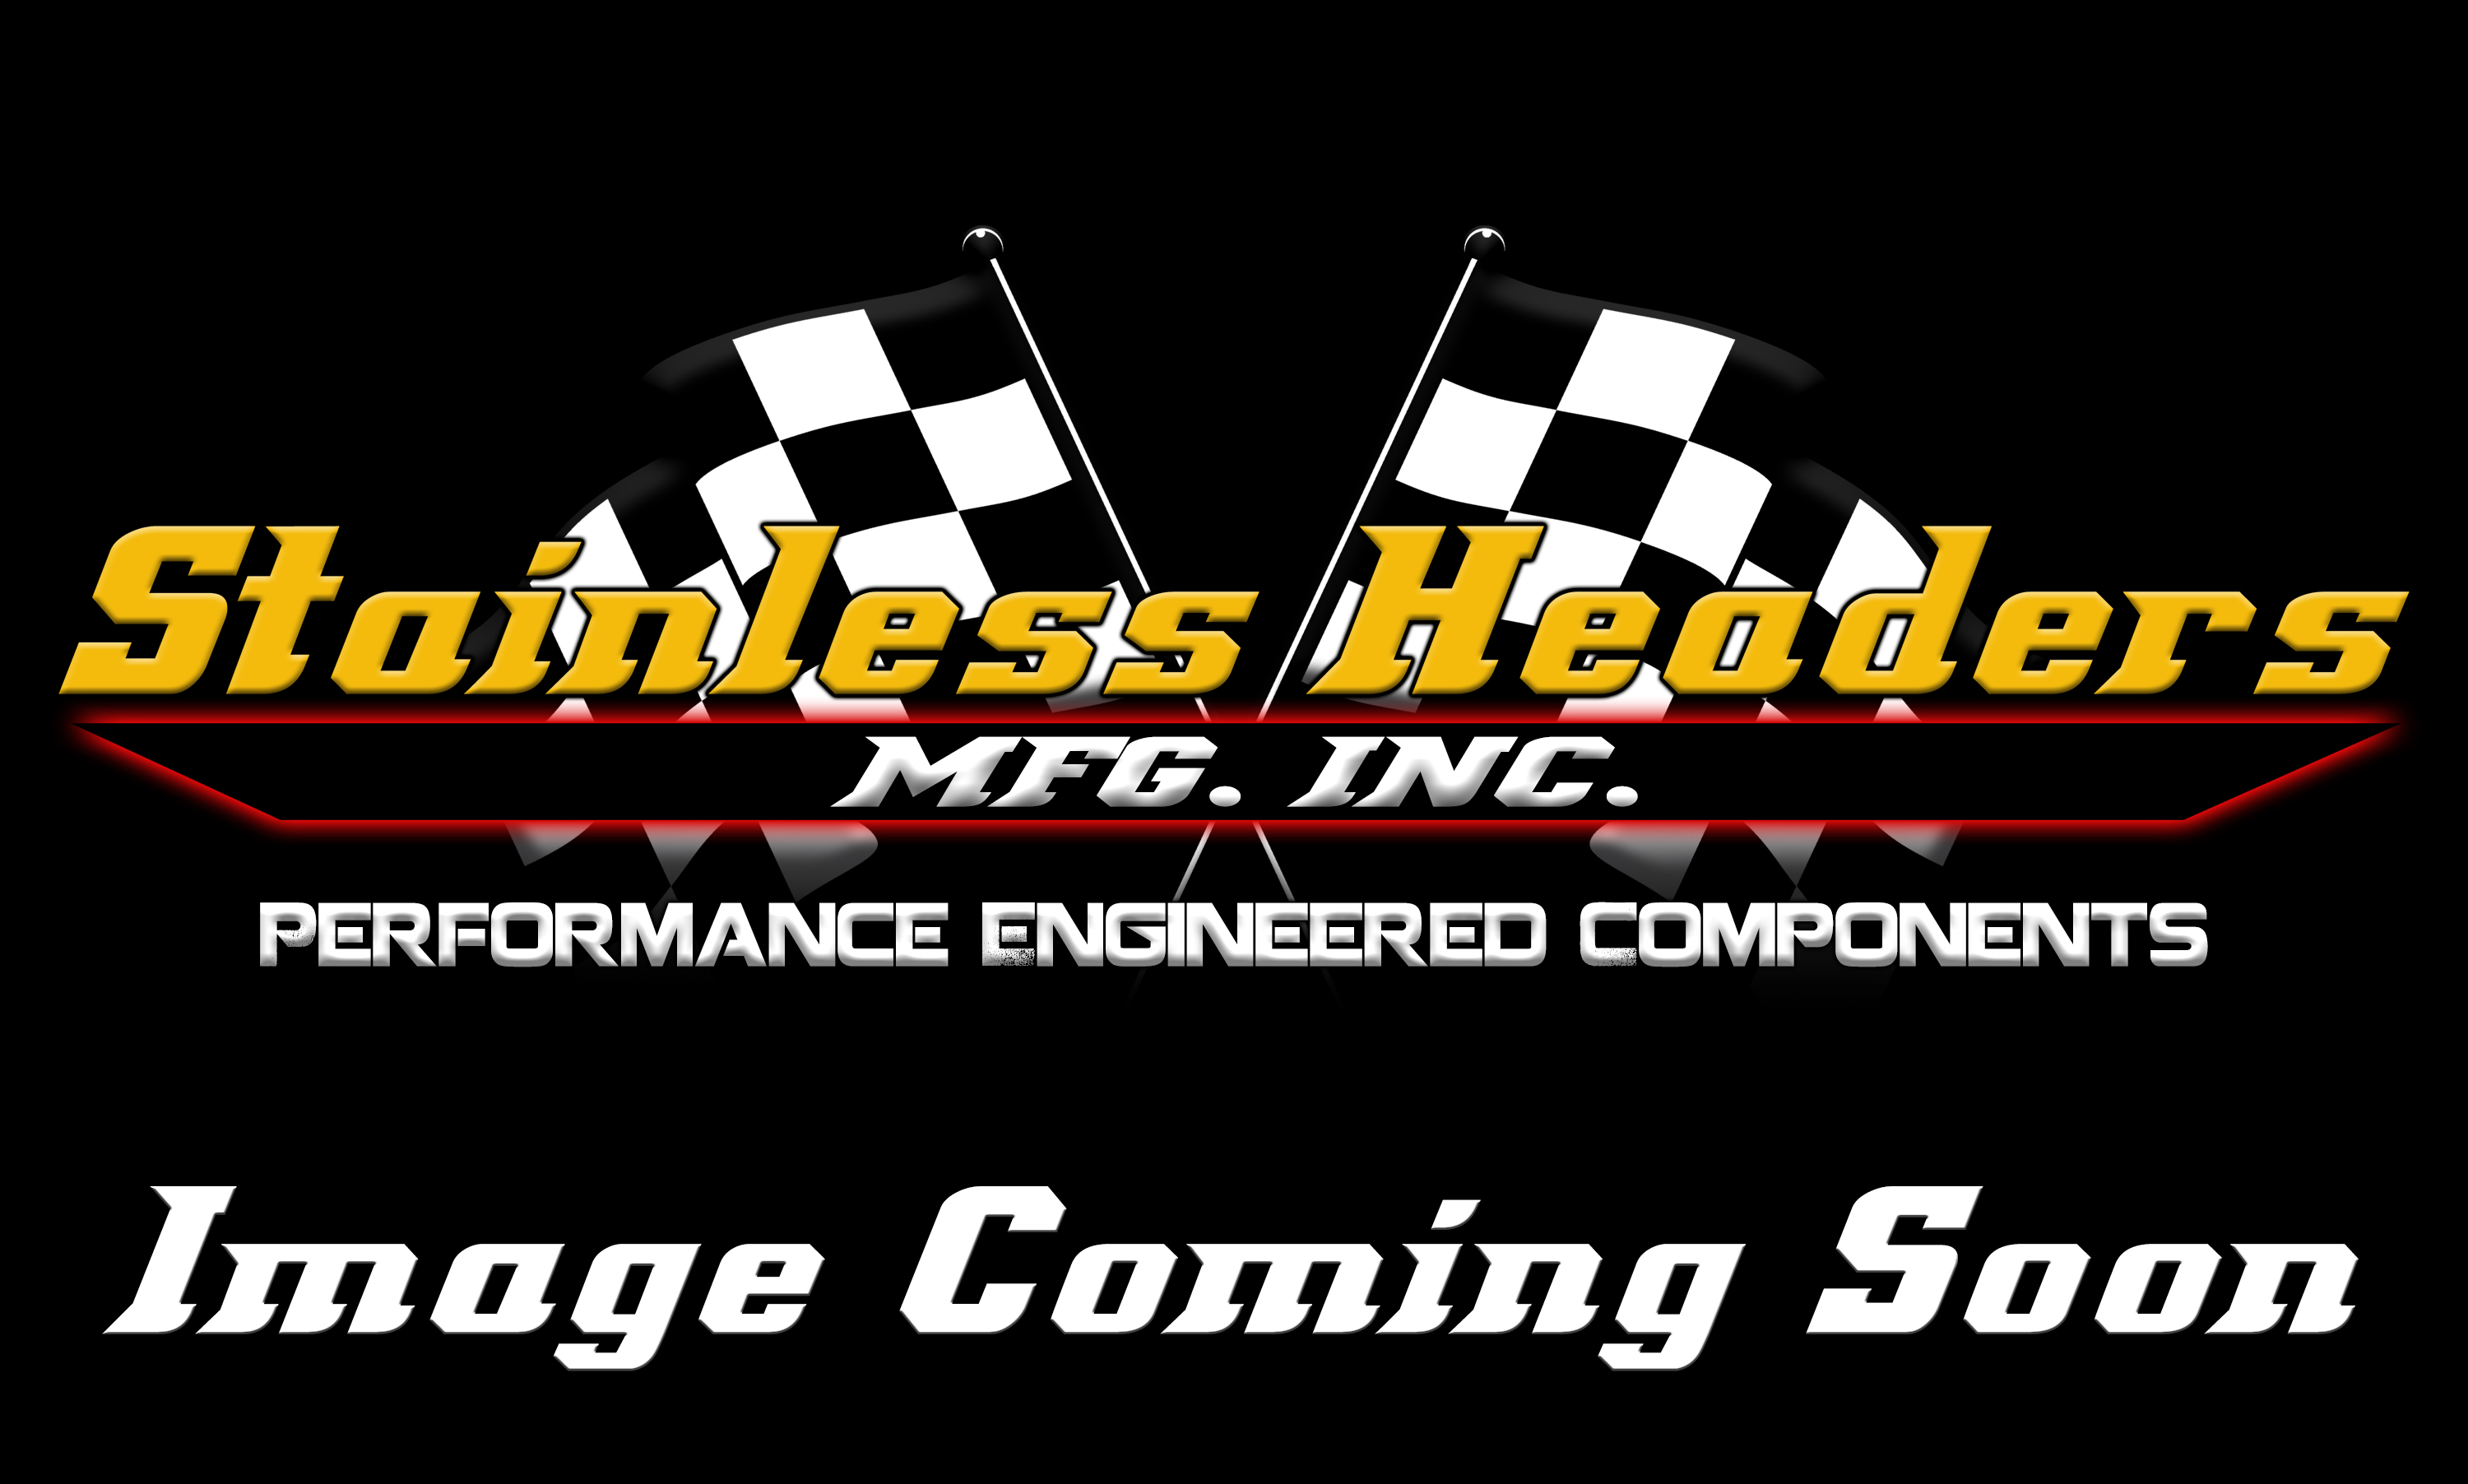 Header Flanges - Mild Steel Header Flanges - Stainless Headers - Audi A4 2.8L DOHC Mild Steel Header Flange